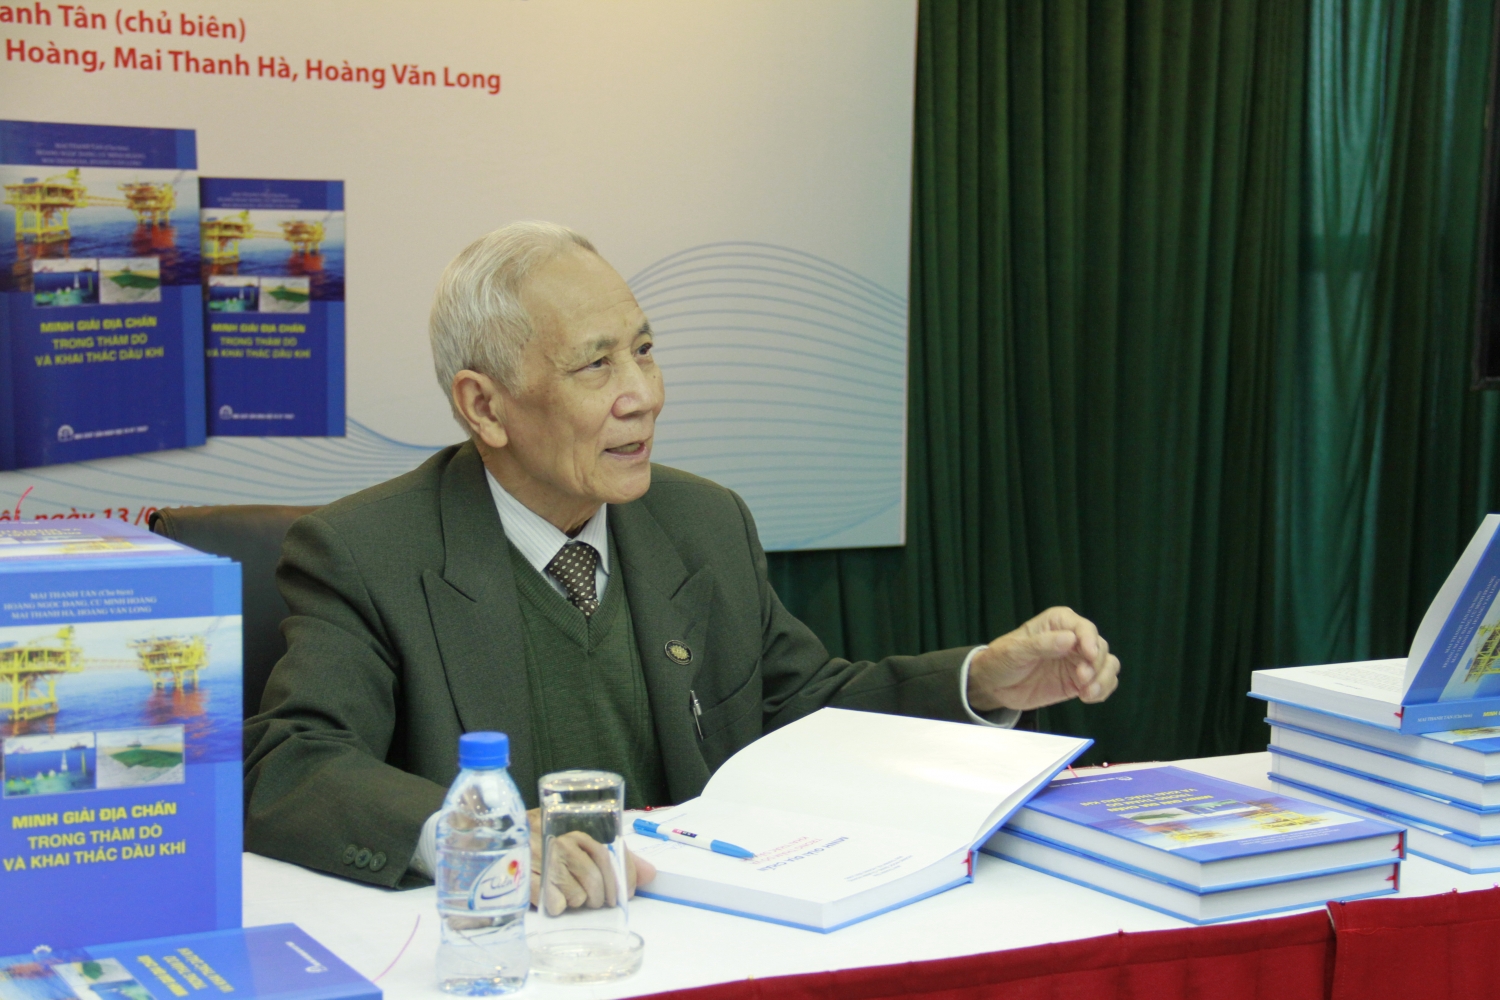 Hội Dầu khí Việt Nam giới thiệu sách “Minh giải địa chấn trong thăm dò và khai thác dầu khí”